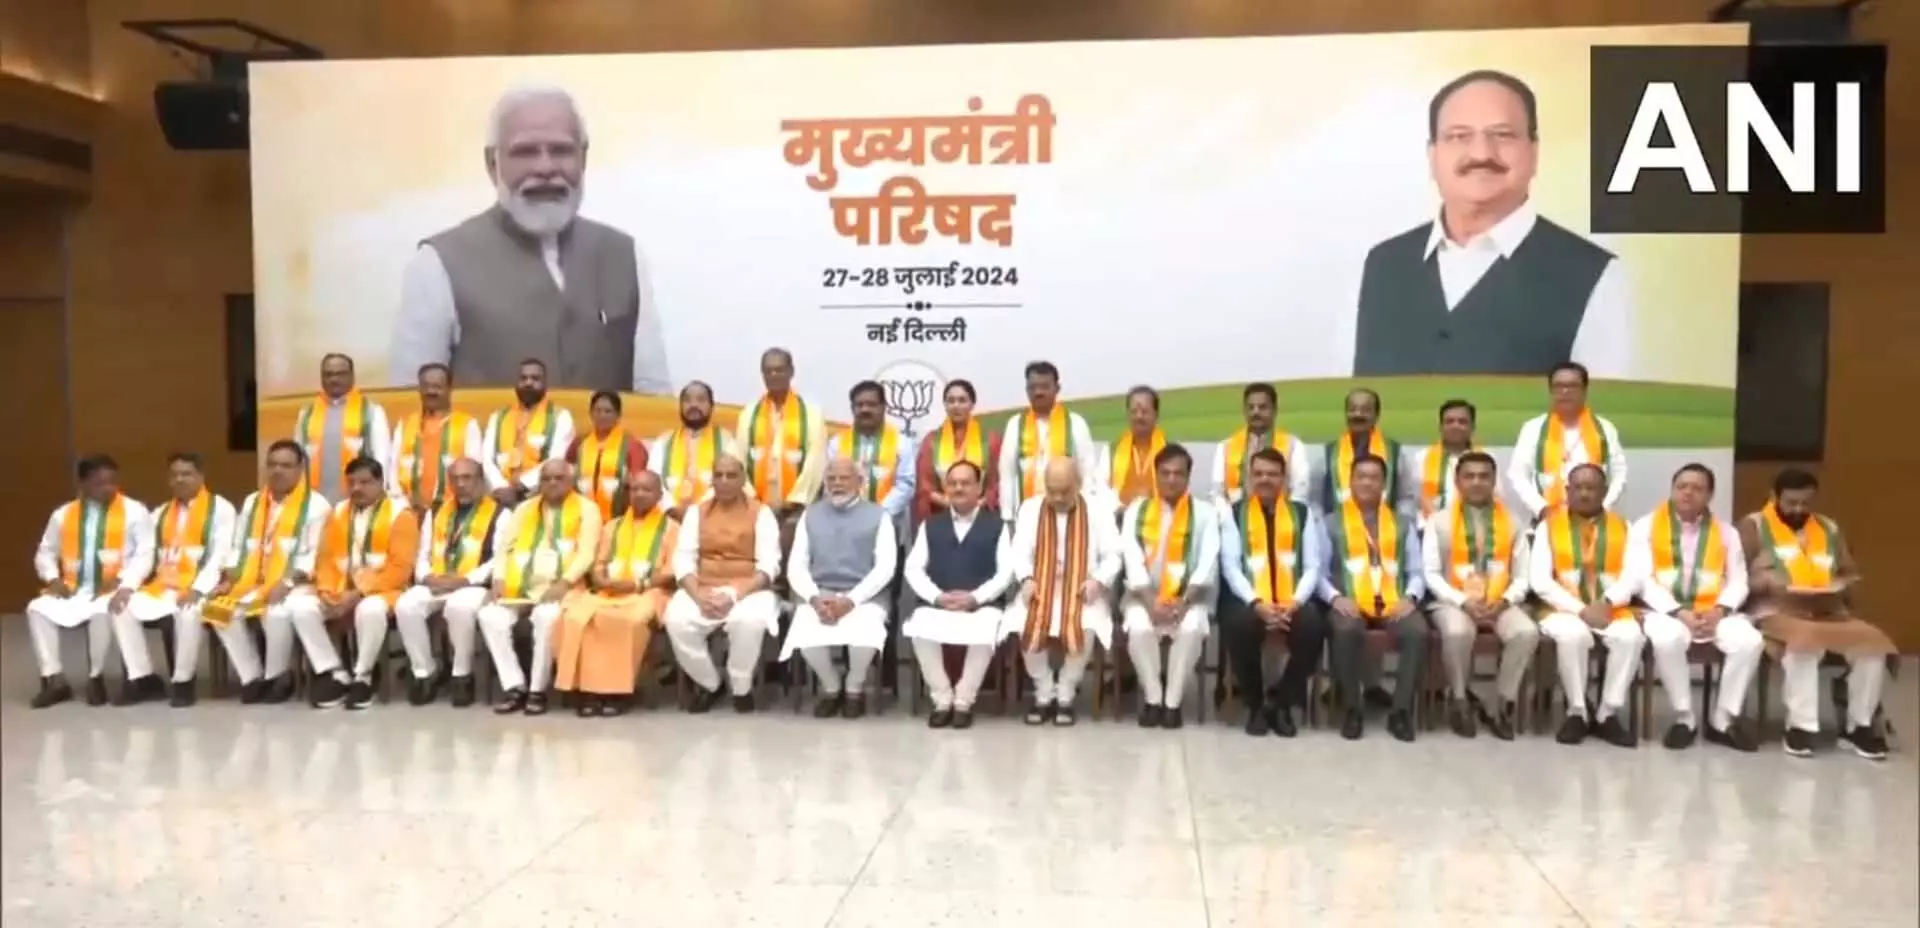 PM नरेंद्र मोदी ने भाजपा मुख्यमंत्रियों और उपमुख्यमंत्रियों की बैठक की अध्यक्षता की